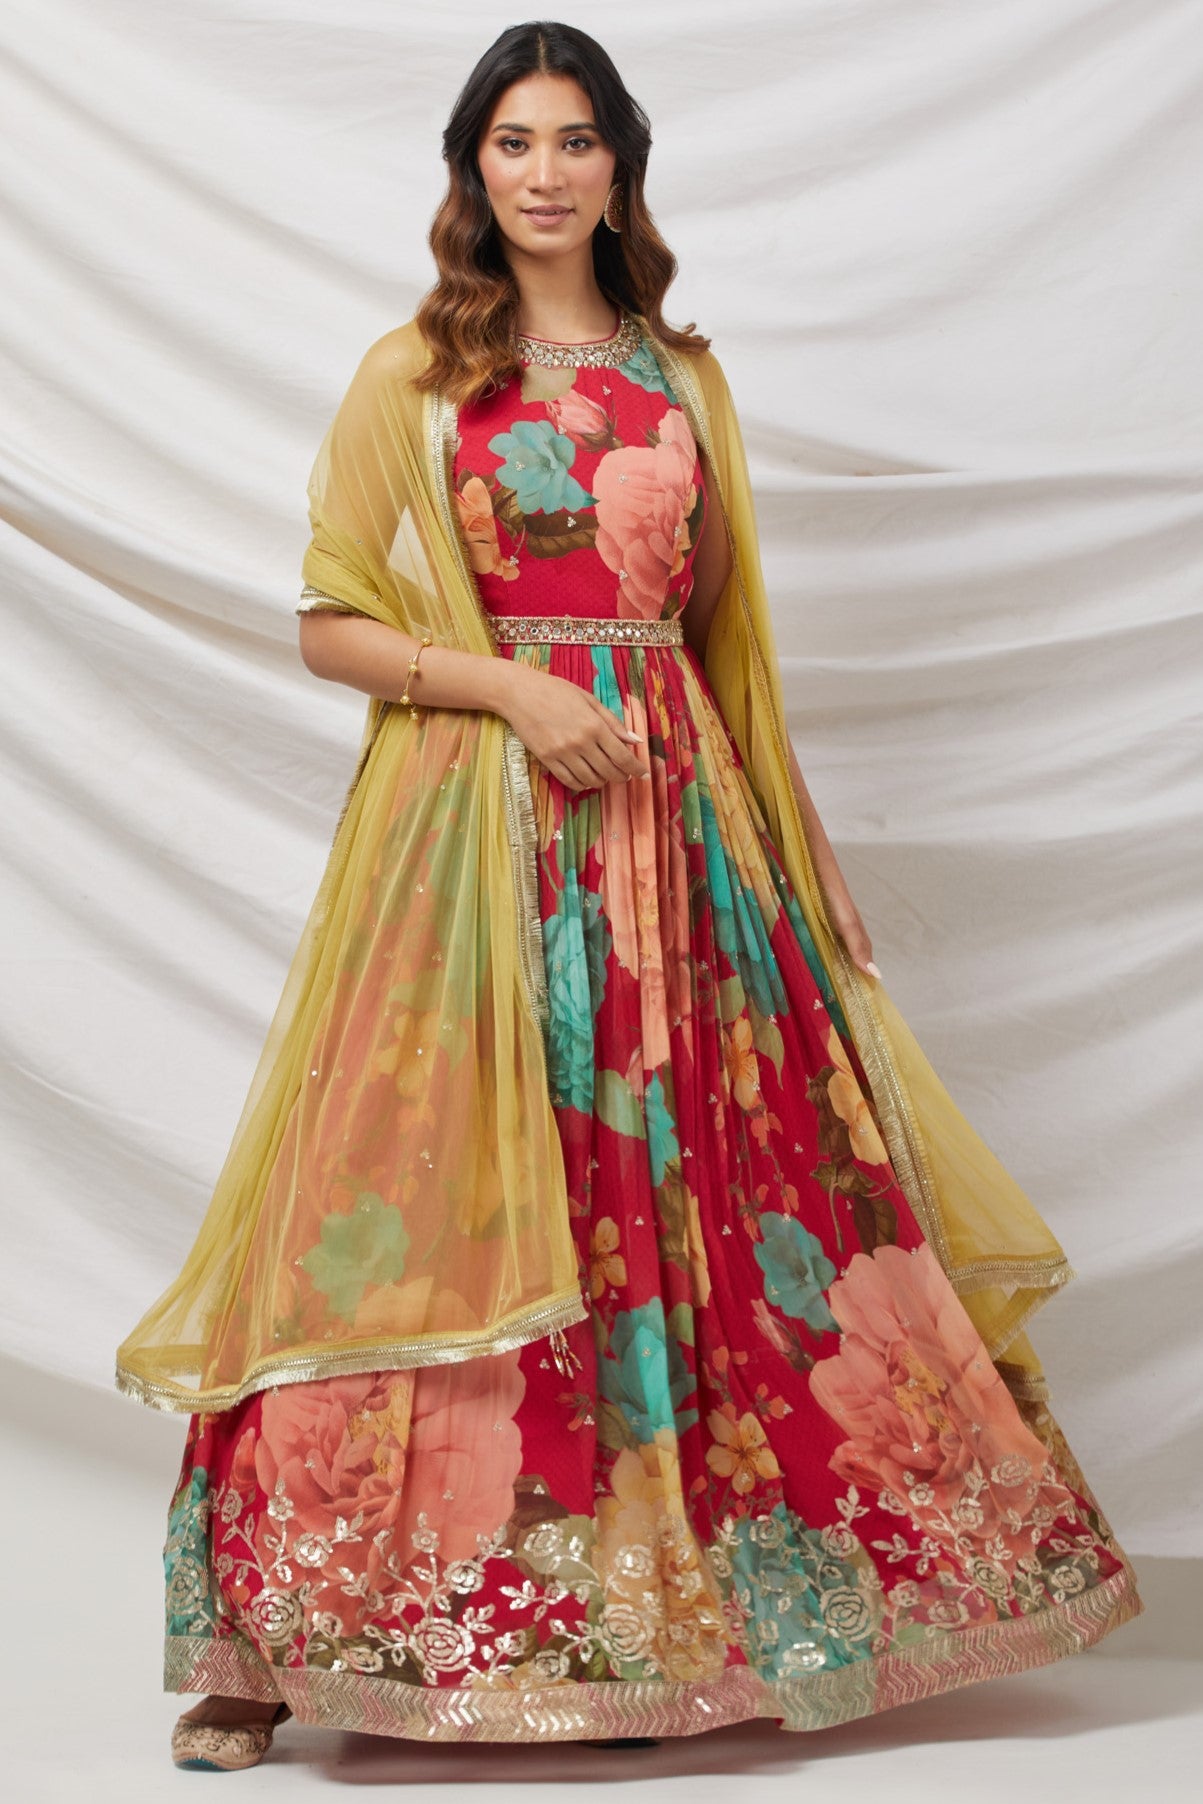 Pink Anarkali dress with Floral printed Design - Dress me Royal